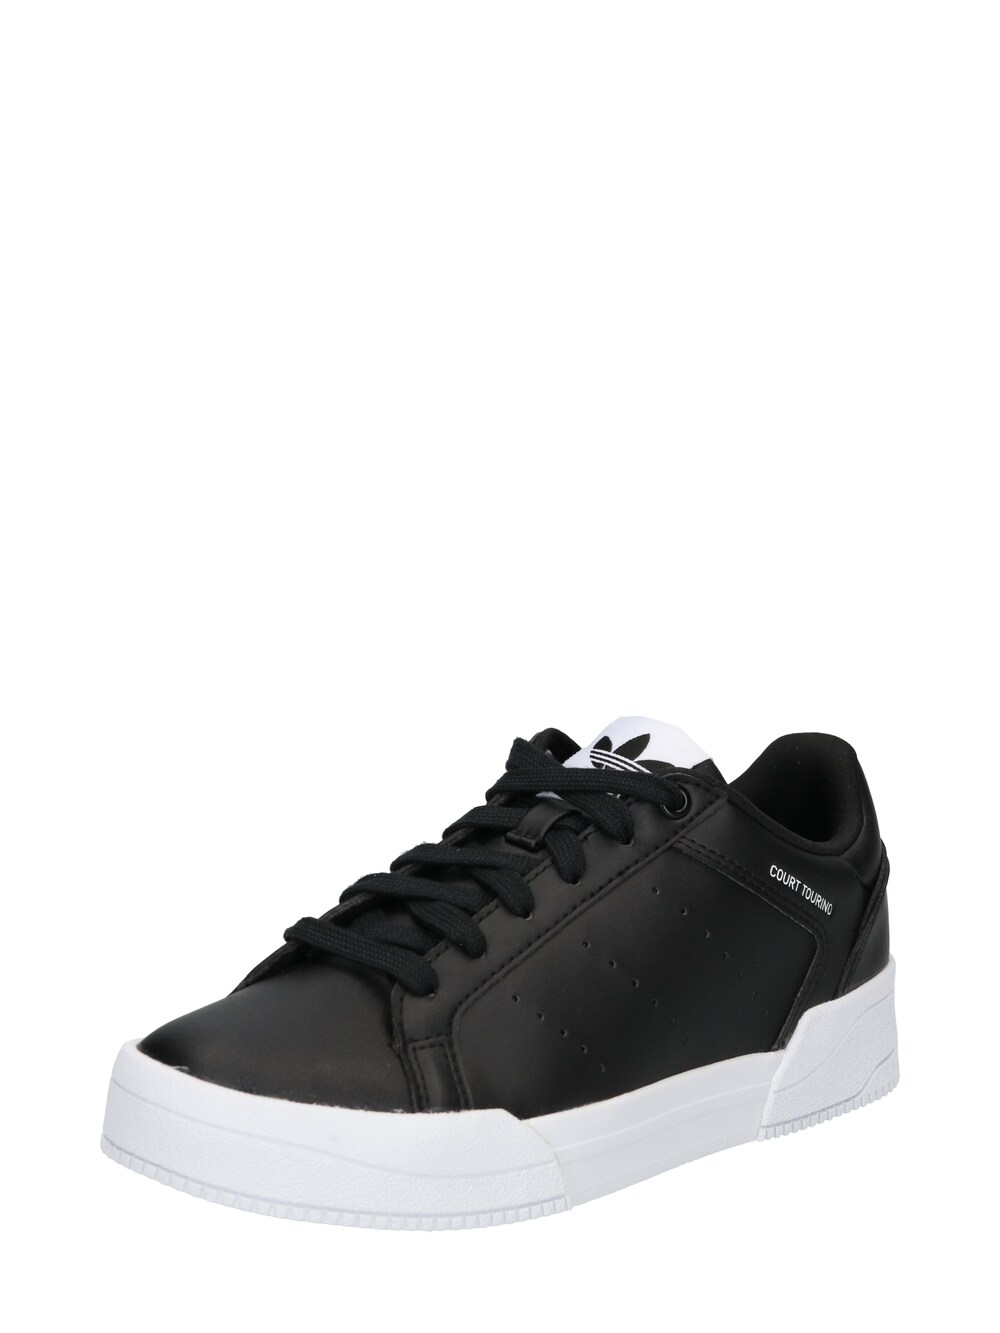 Кроссовки Adidas Court Tourino, черный кроссовки adidas originals court tourino core black white